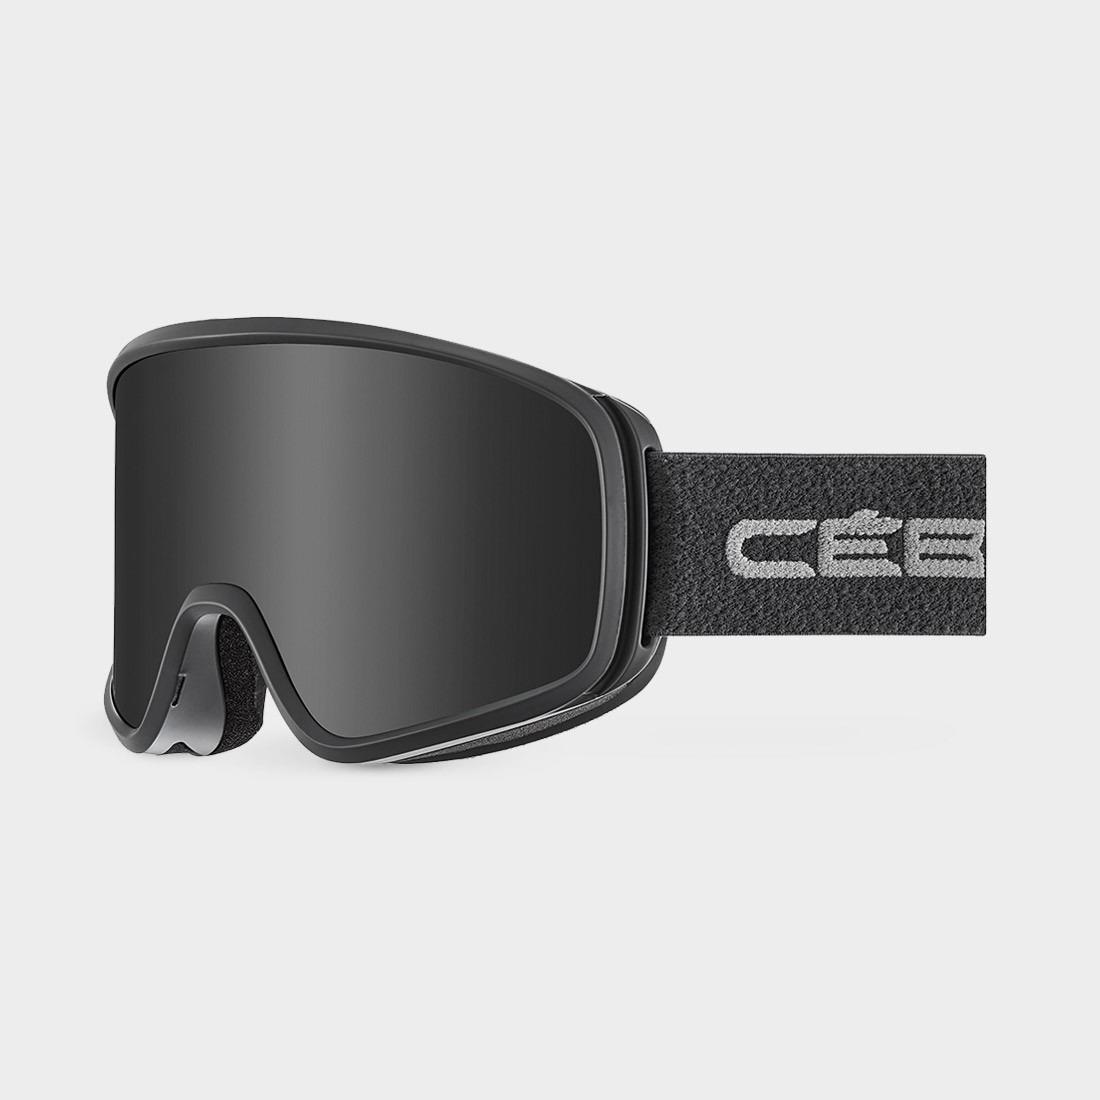  Cebe Strıker_Evo Cylındrıcal Kayak Gözlüğü CBG356